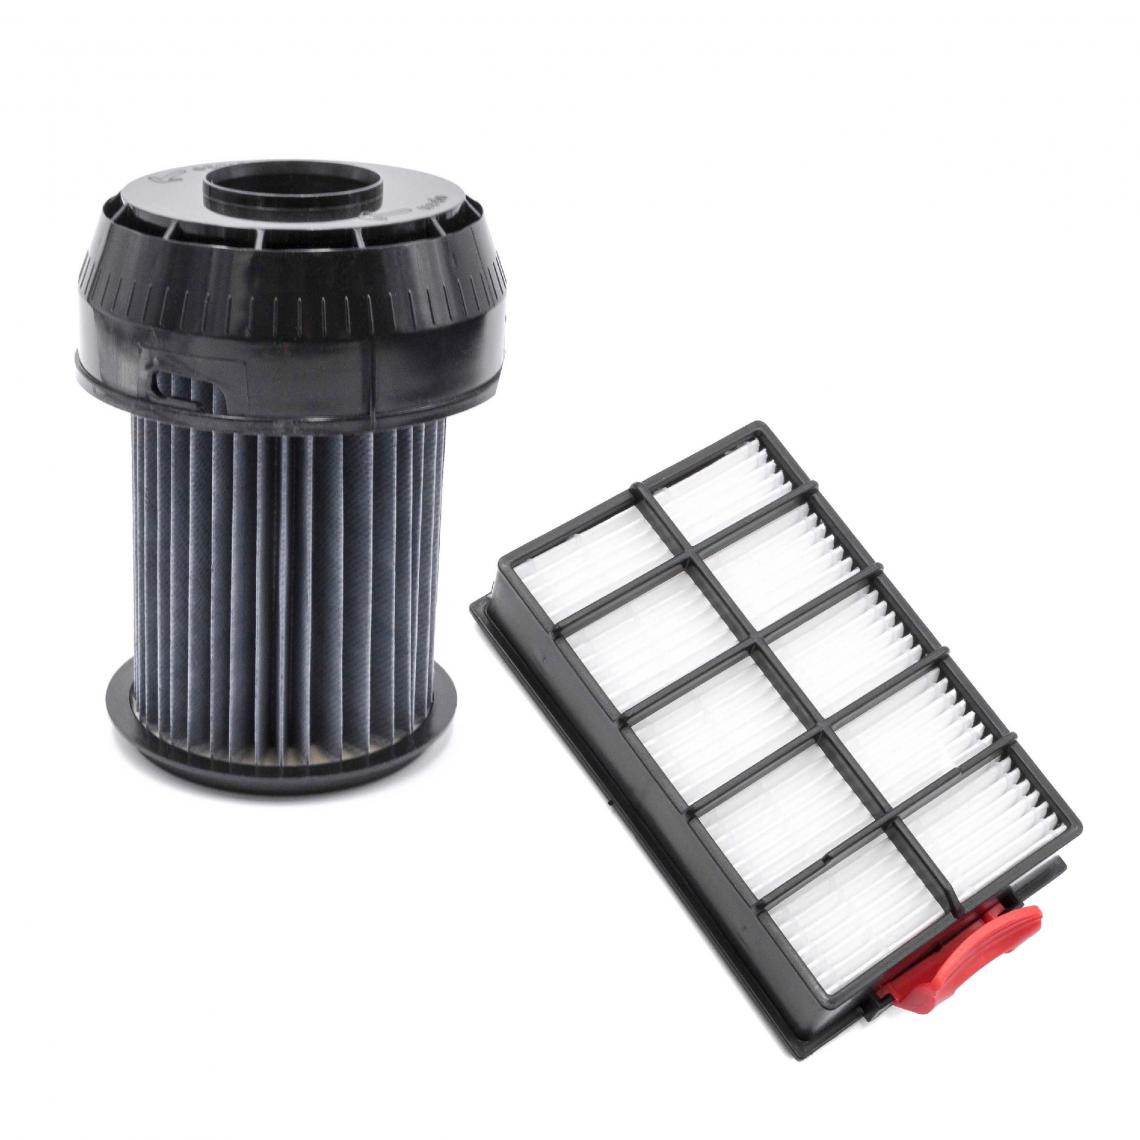 Vhbw - vhbw Lot de filtres compatible avec Bosch BGS618M101, BGS6223201, BGS6225AU01, BGS6225GB01 aspirateur - 2x Filtres de rechange - Accessoire entretien des sols